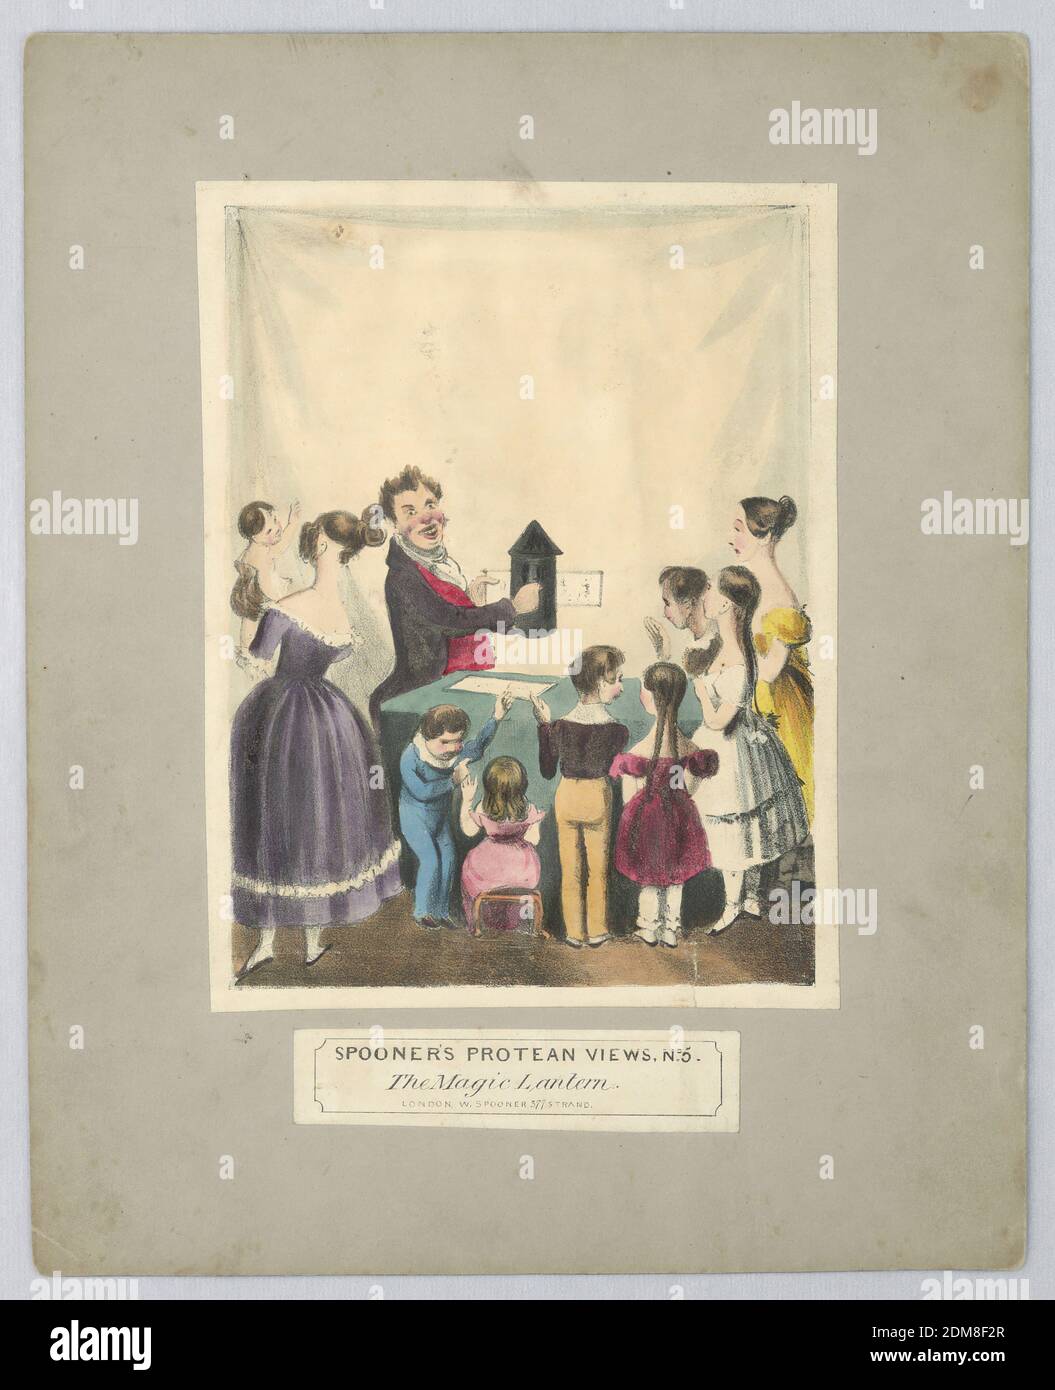 Jouet optique: 'The Magic Lantern' (vues protean de Spooner, non 5), William Spooner, Angleterre, active 1830 – 1854, lithographe, pinceau et aquarelle sur papier, monté, deux adultes et un groupe d'enfants sont témoins d'un spectacle de lanterne magique - quand on les tient à la lumière, on voit une caricature d'une figure noire dansant sur la mélodie d'un diable jouant du violon. Ci-dessous, titre et nom de l'éditeur., Londres, Angleterre, ca. 1838, Imprimer Banque D'Images